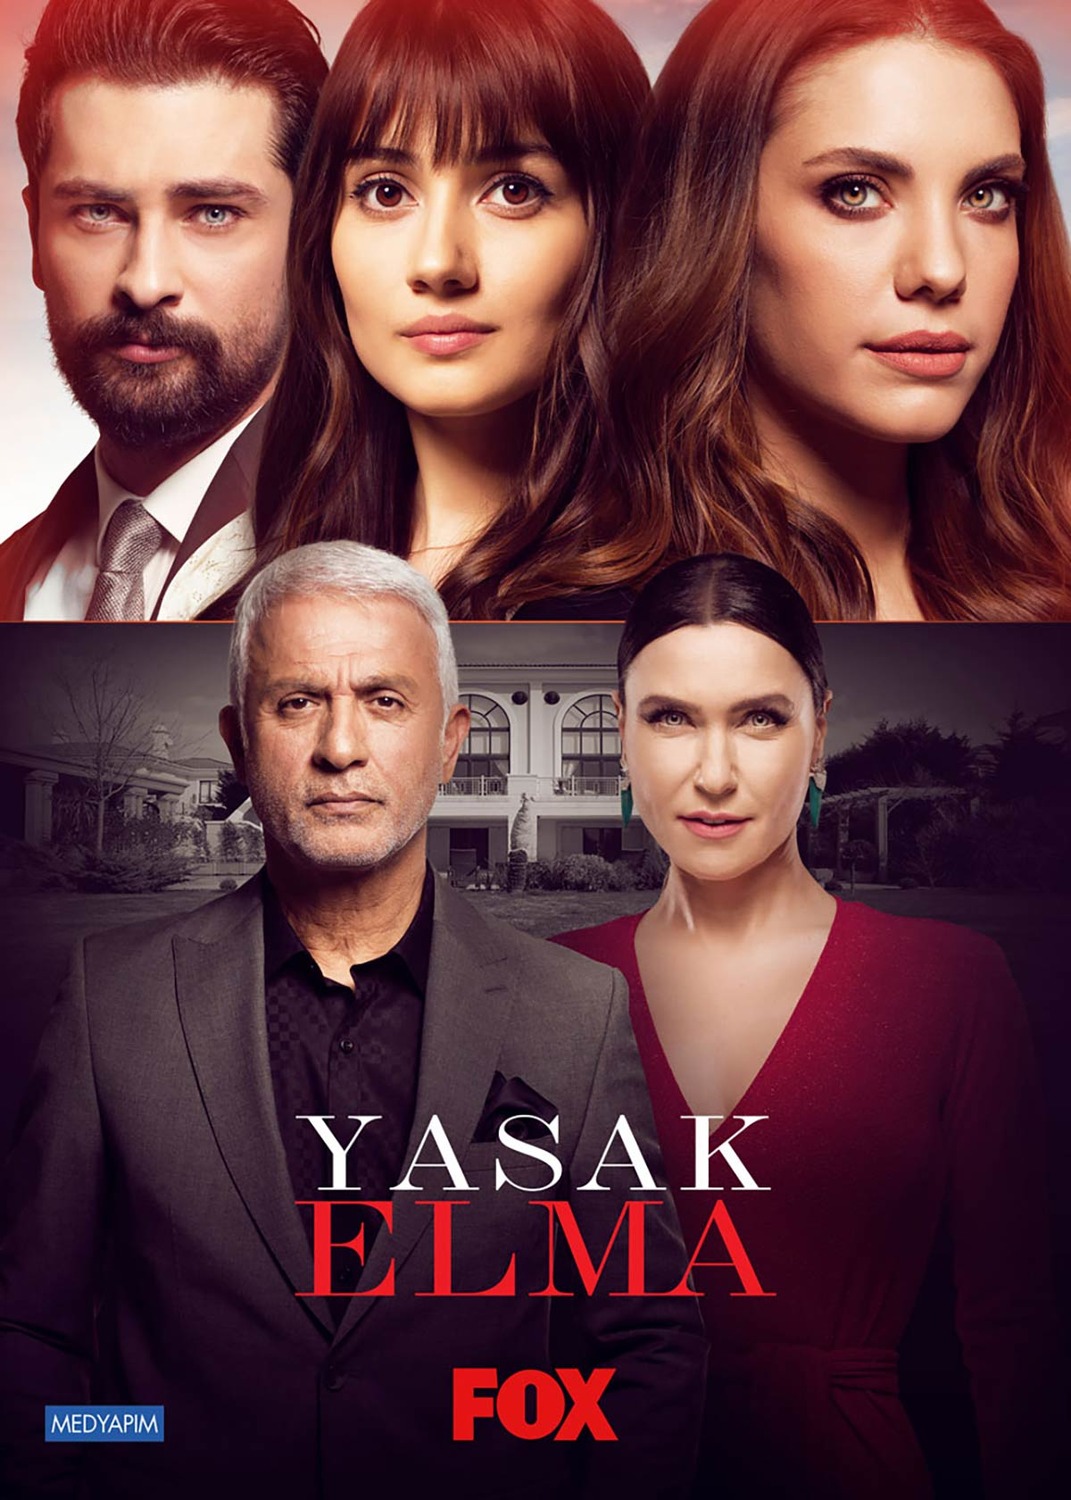 Extra Large TV Poster Image for Yasak Elma (#1 of 3)